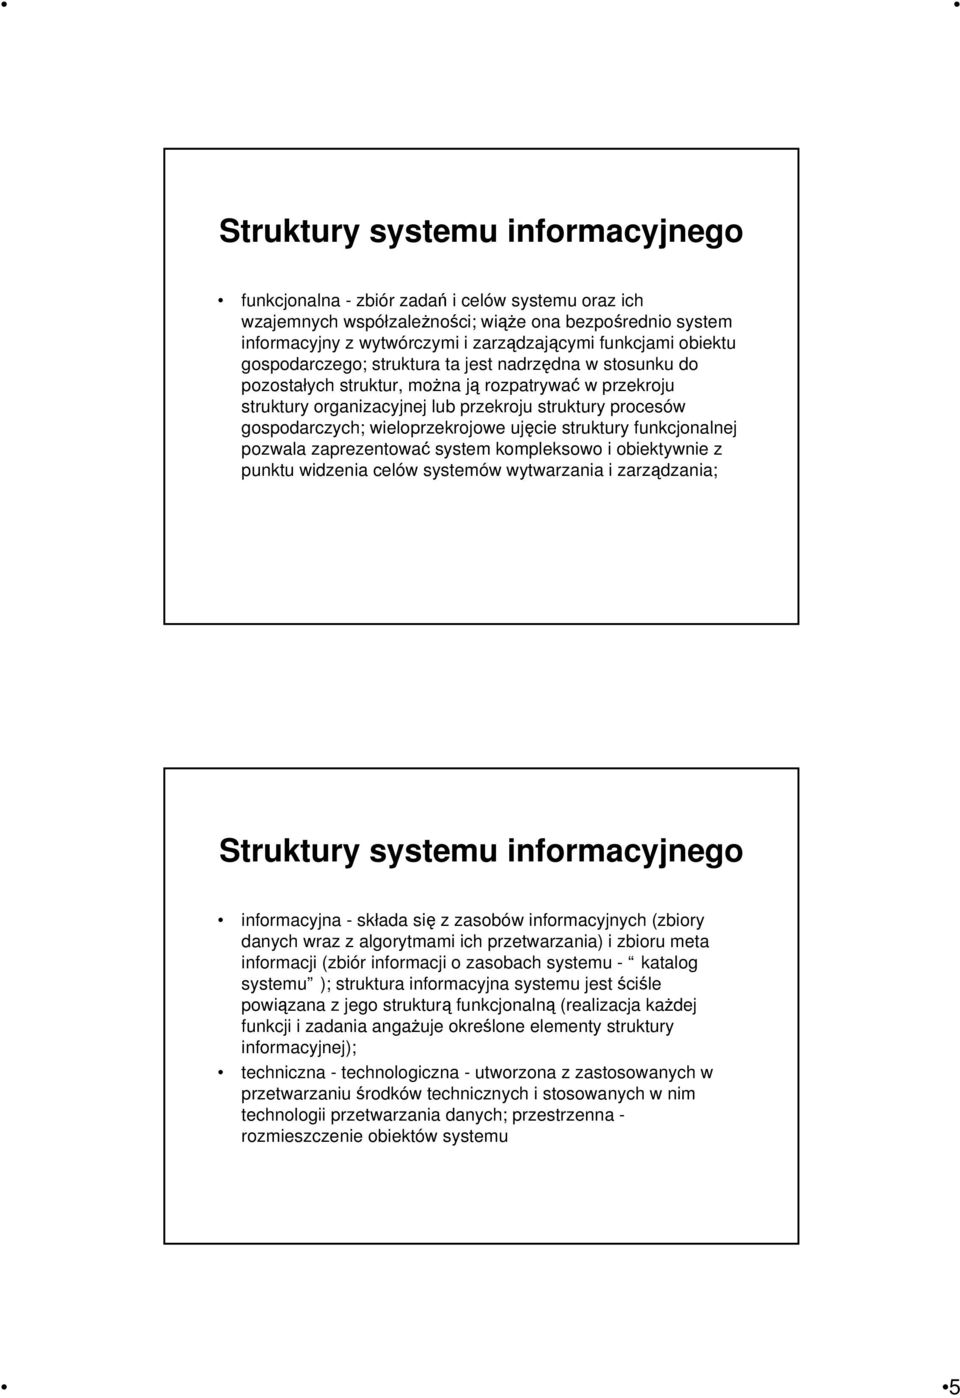 wieloprzekrojowe ujęcie struktury funkcjonalnej pozwala zaprezentować system kompleksowo i obiektywnie z punktu widzenia celów systemów wytwarzania i zarządzania; Struktury systemu informacyjnego